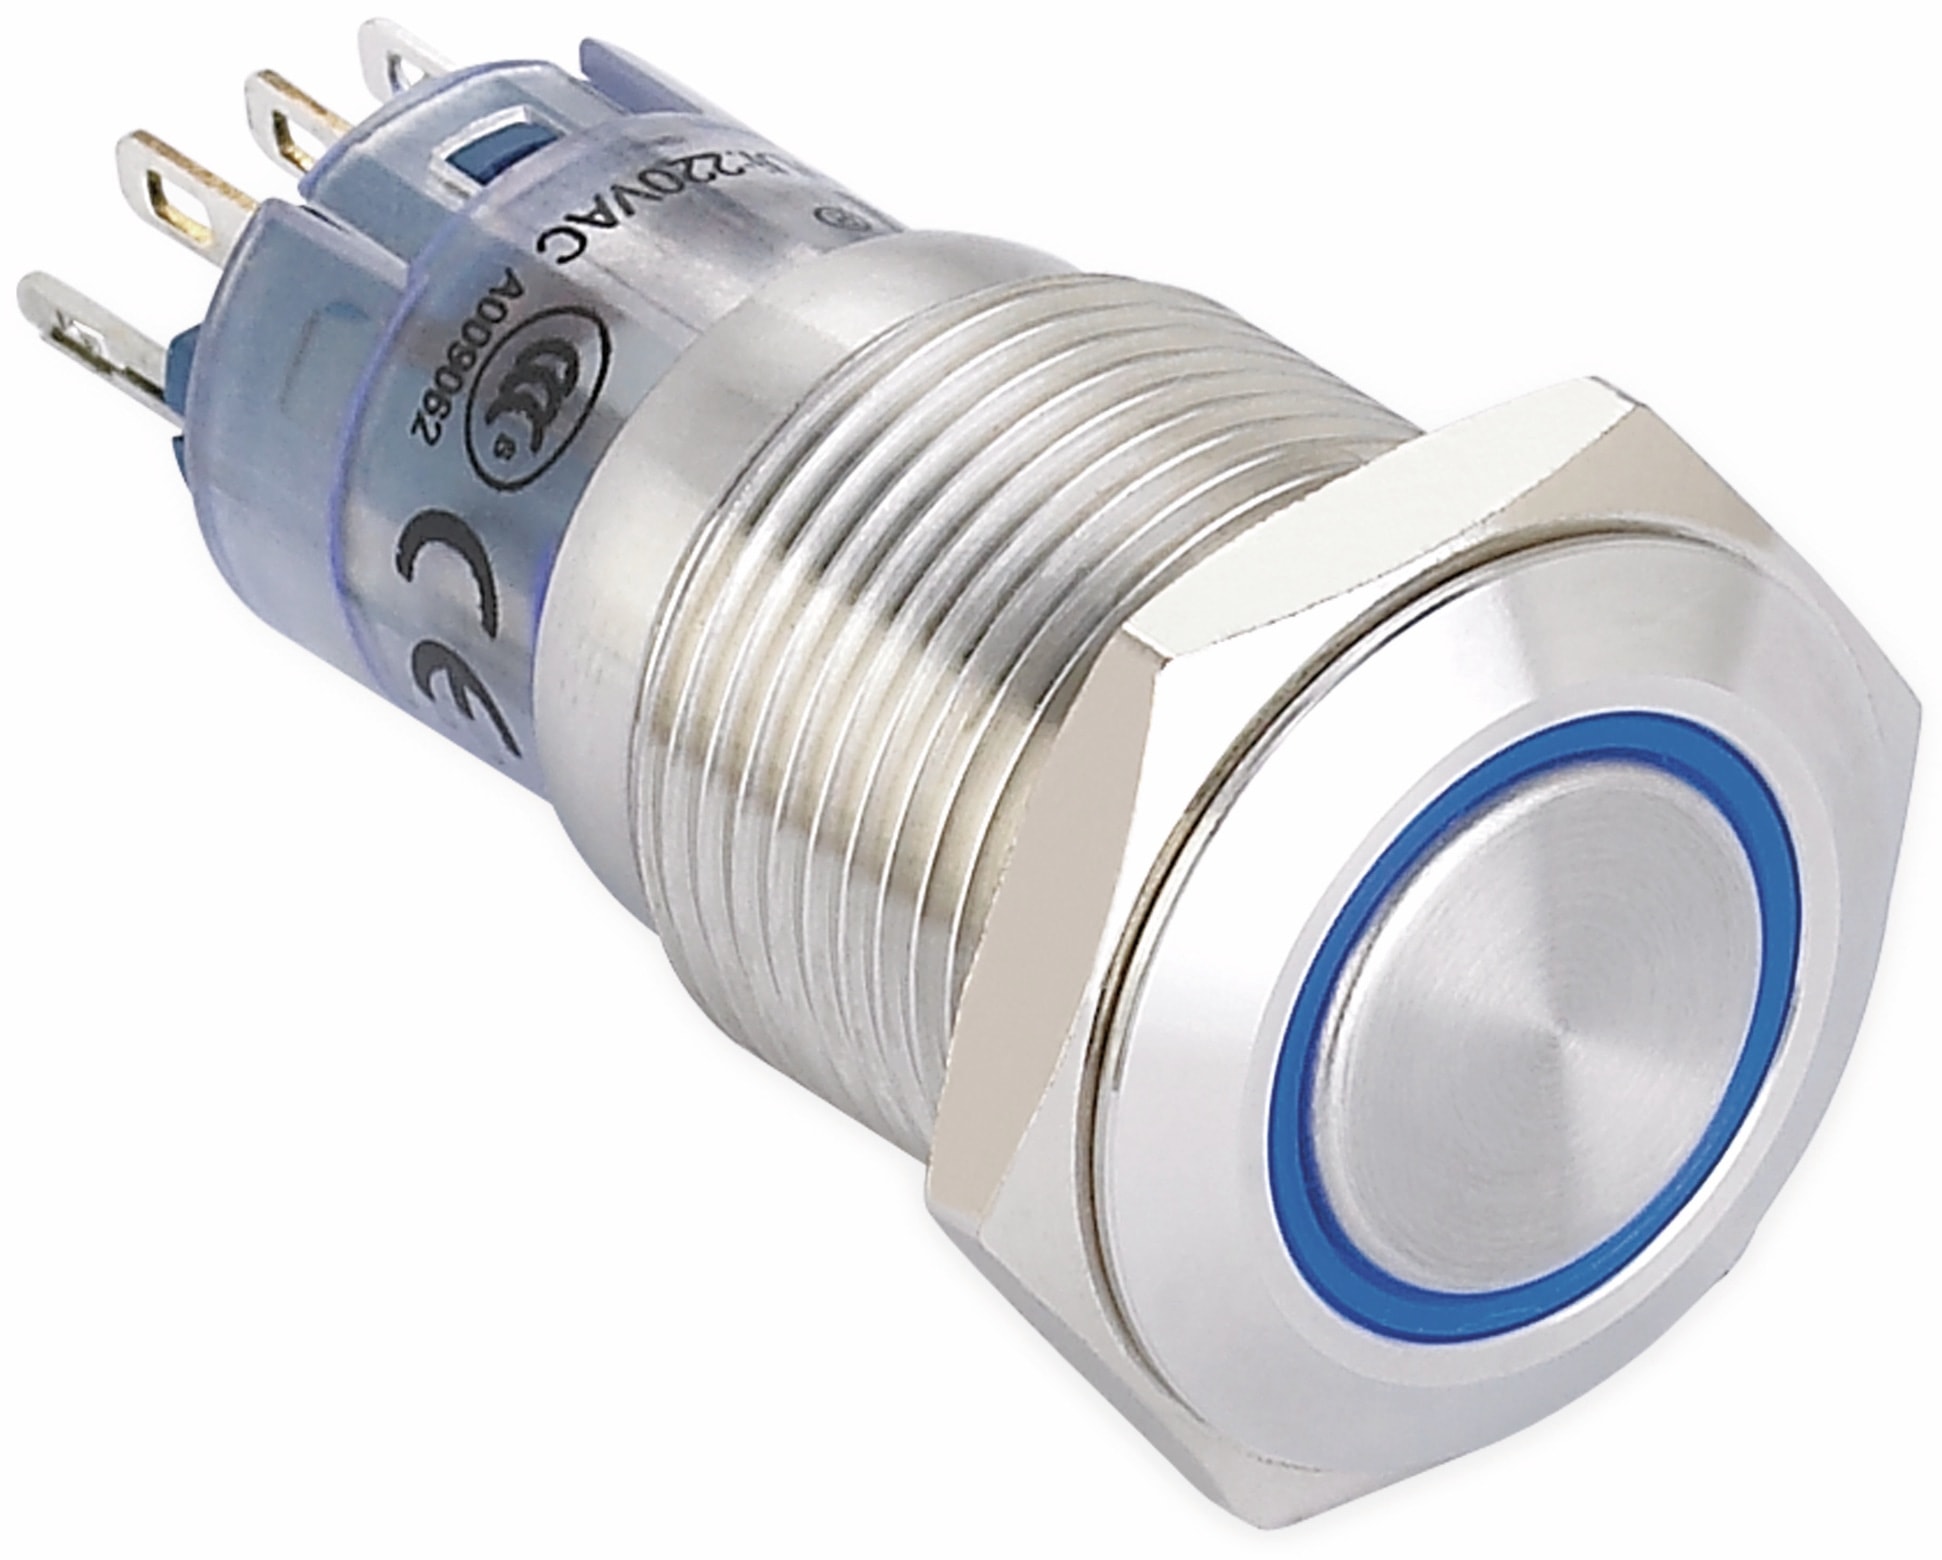 ONPOW Schalter, 24 V/DC, 1x Off/(On), Beleuchtung blau, Lötanschluss, flach rund, Edelstahl, 16 mm